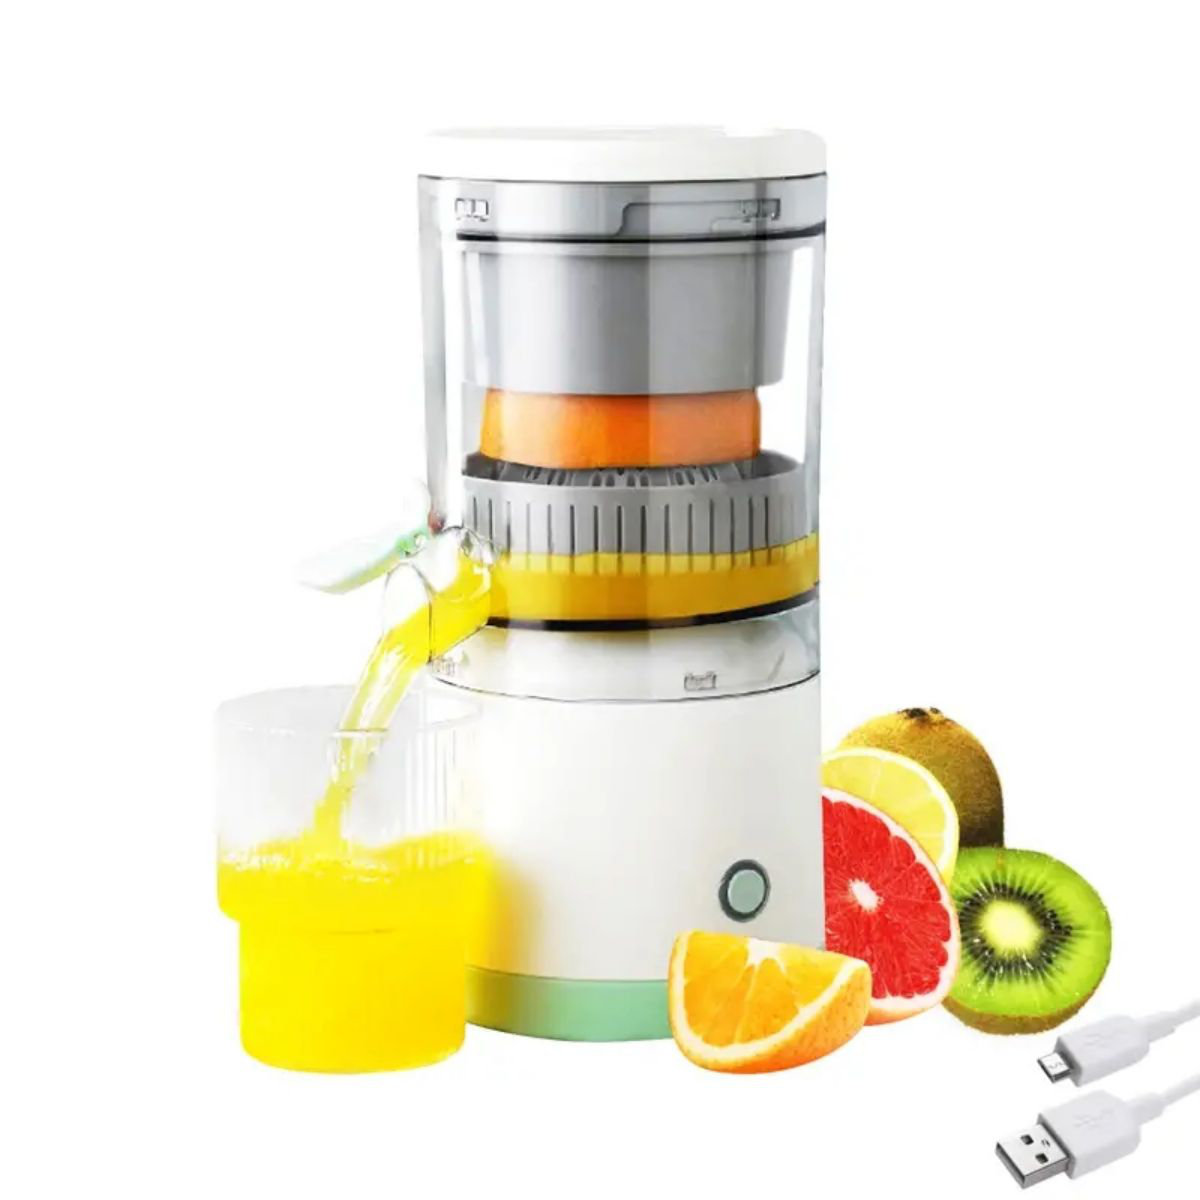 Make lemonade out of lemons with a NutriBullet slow juicer for